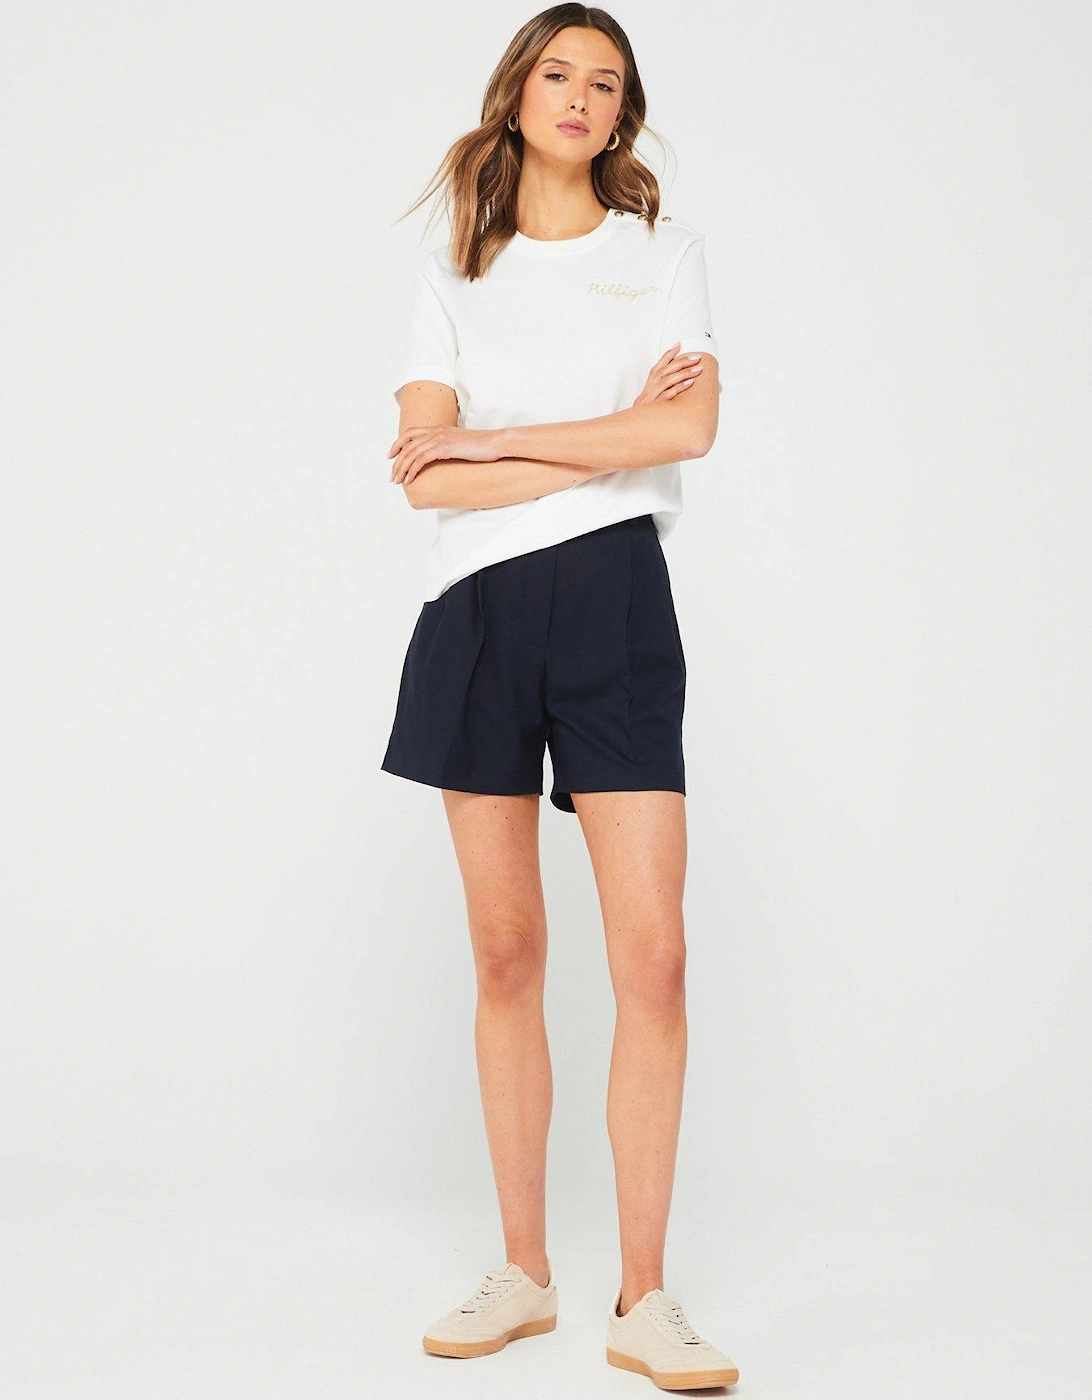 Pleated Shorts - Navy